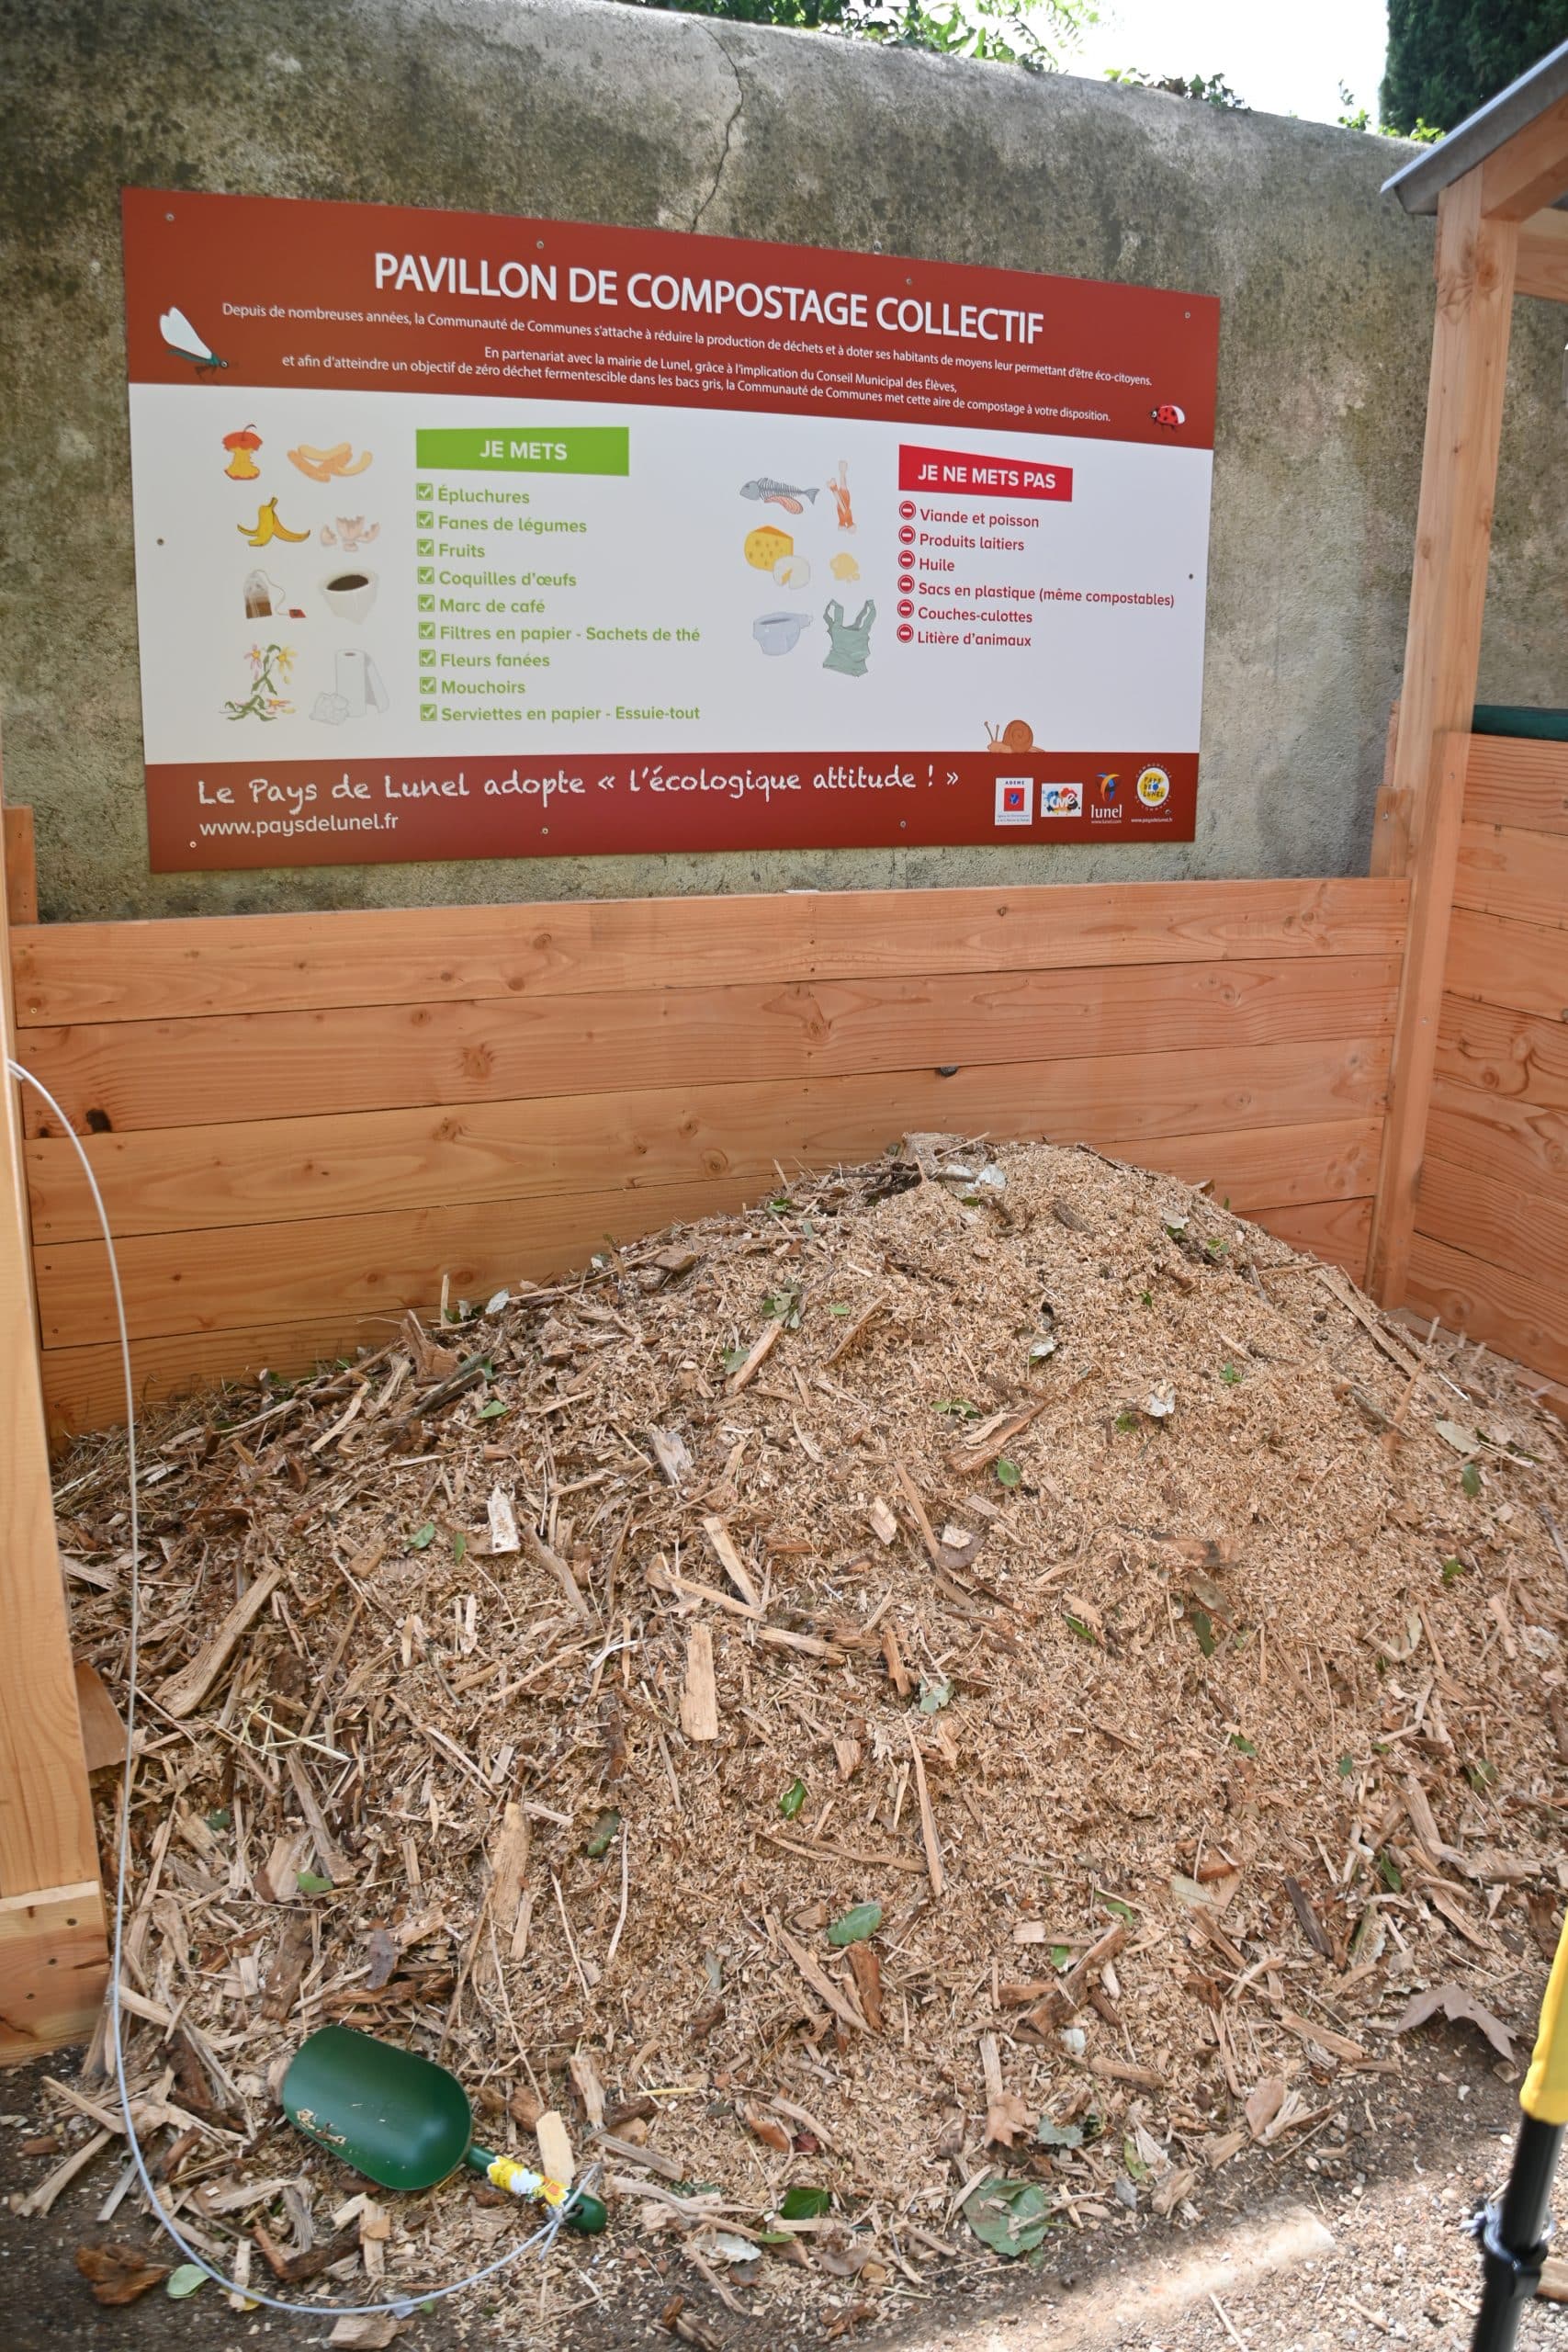 Le 1° Pavillon de compostage en centre-ville au parc Jean Hugo à Lunel